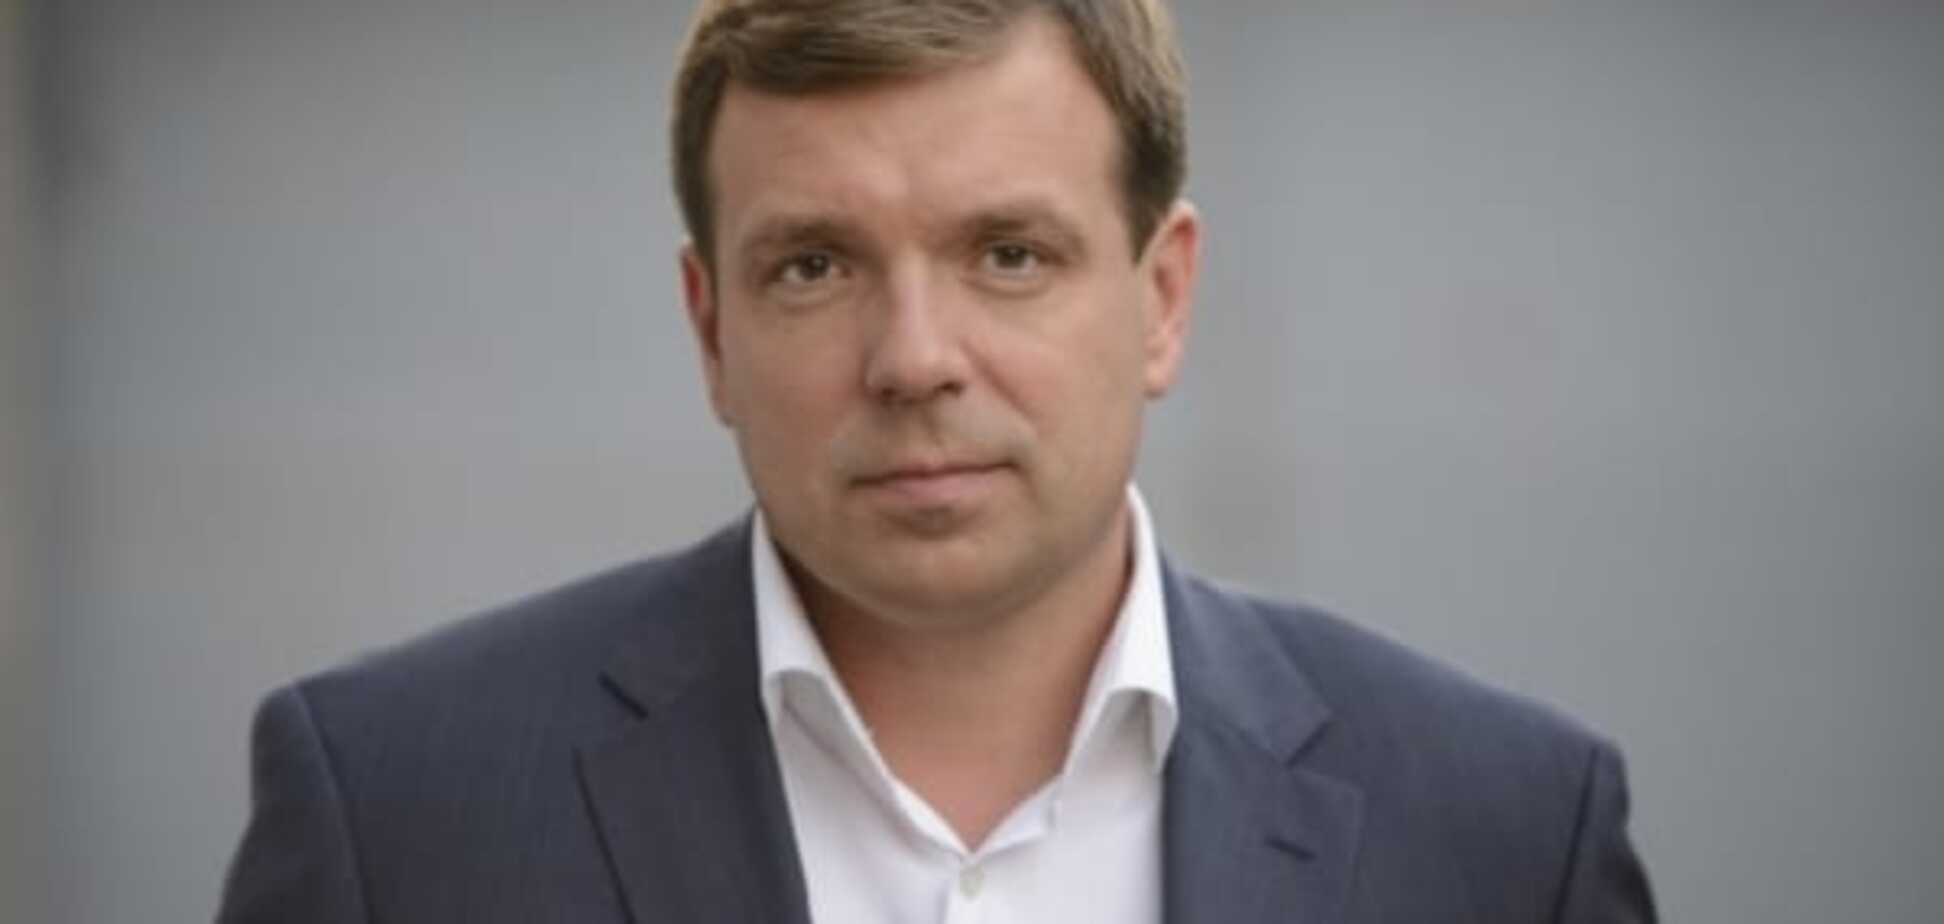 Скорик: БПП и БЮТ готовятся сорвать голосование по выборам главы Одесского облсовета